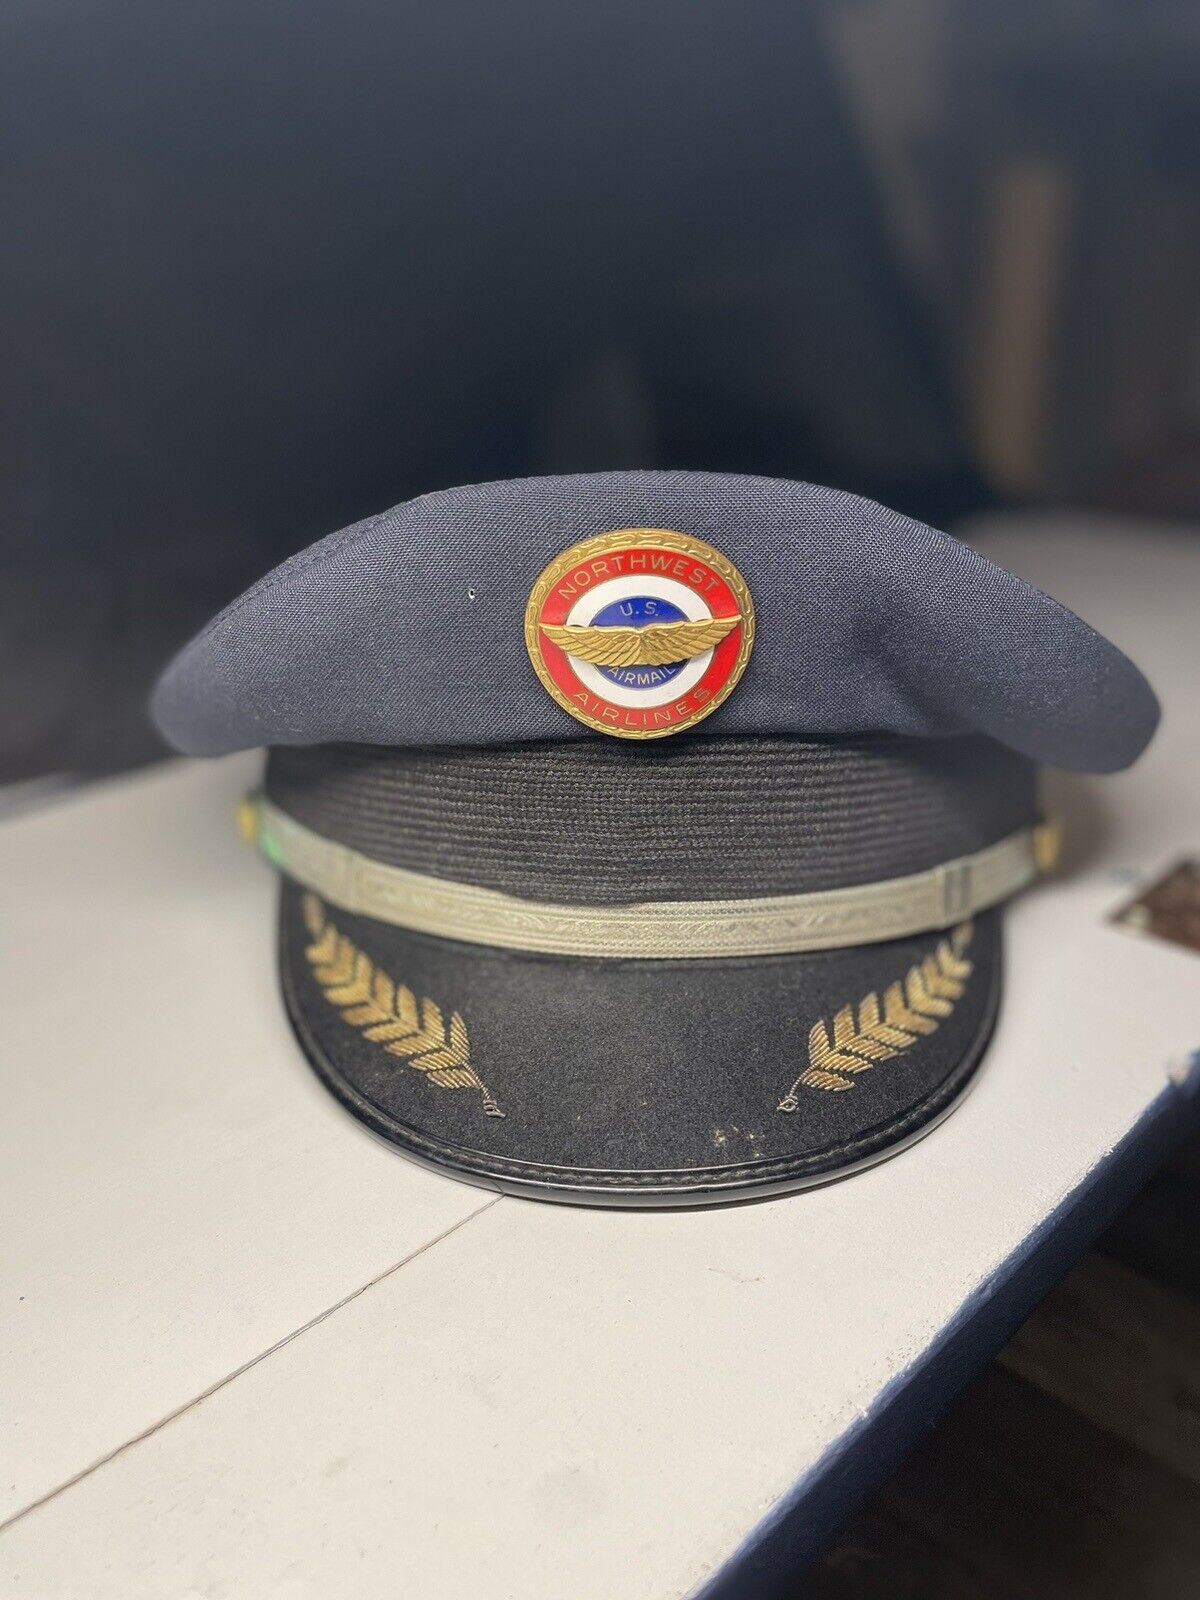 Northwest Airline Pilot Hat And Coat